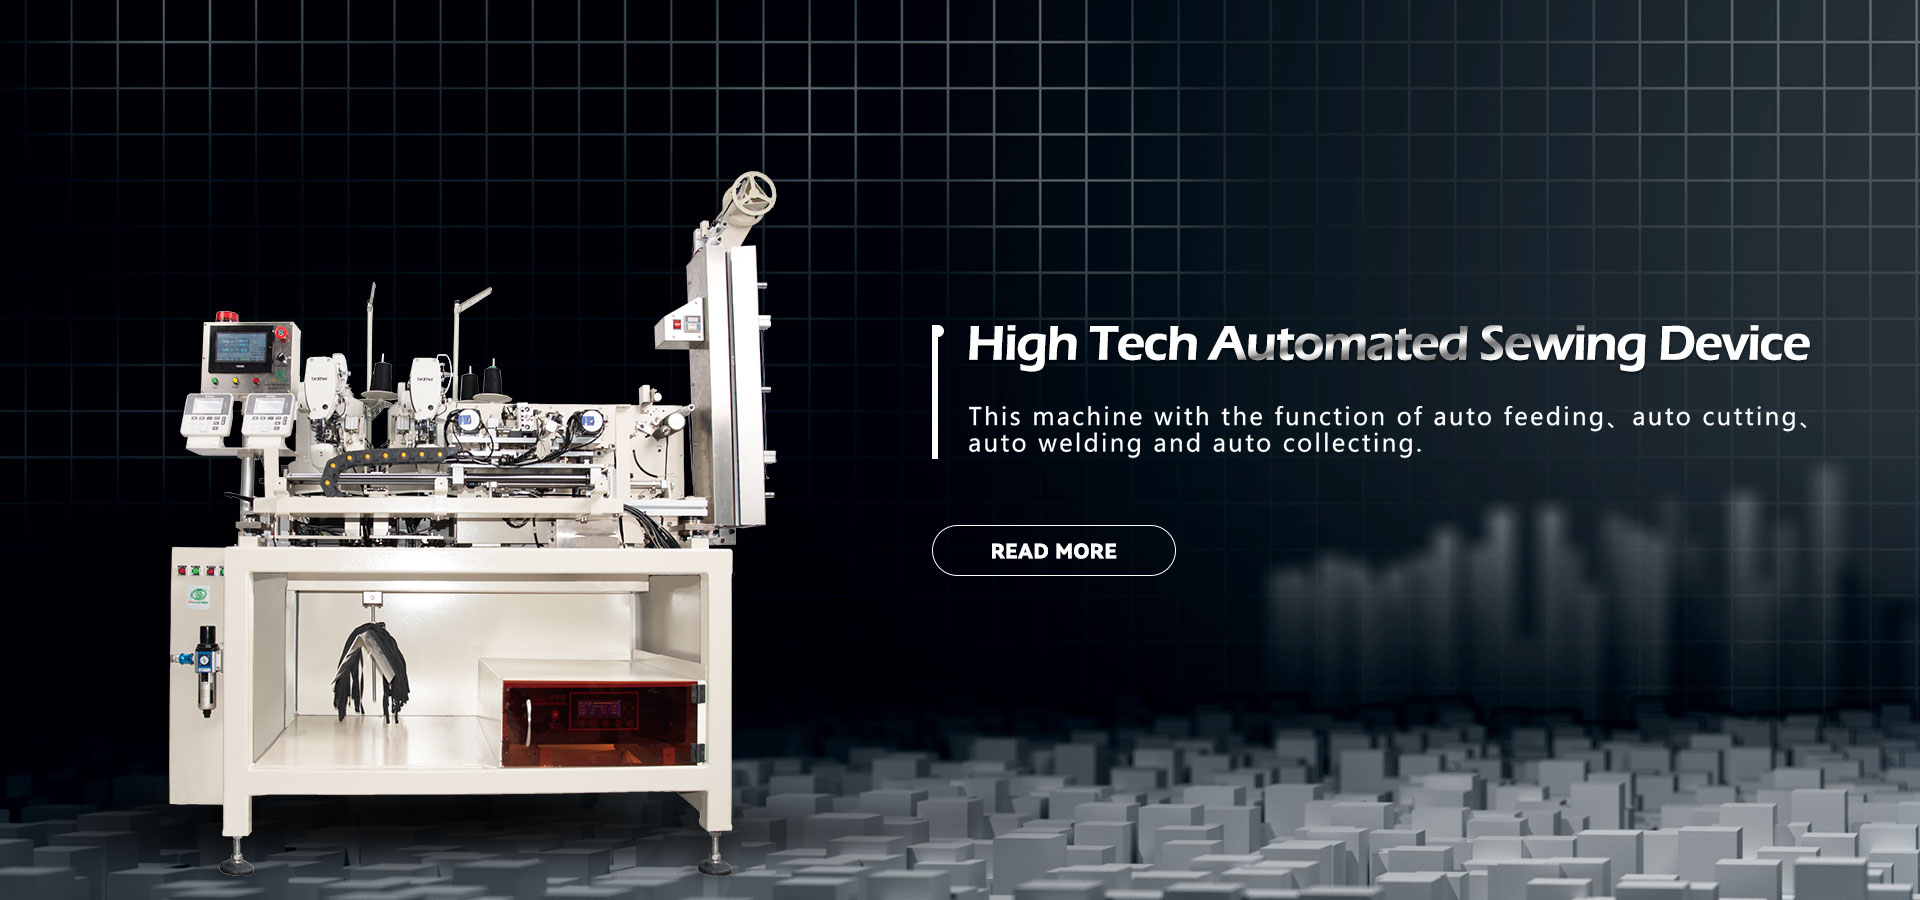 Високотехнологічні виробники автоматизованих швейних пристроїв